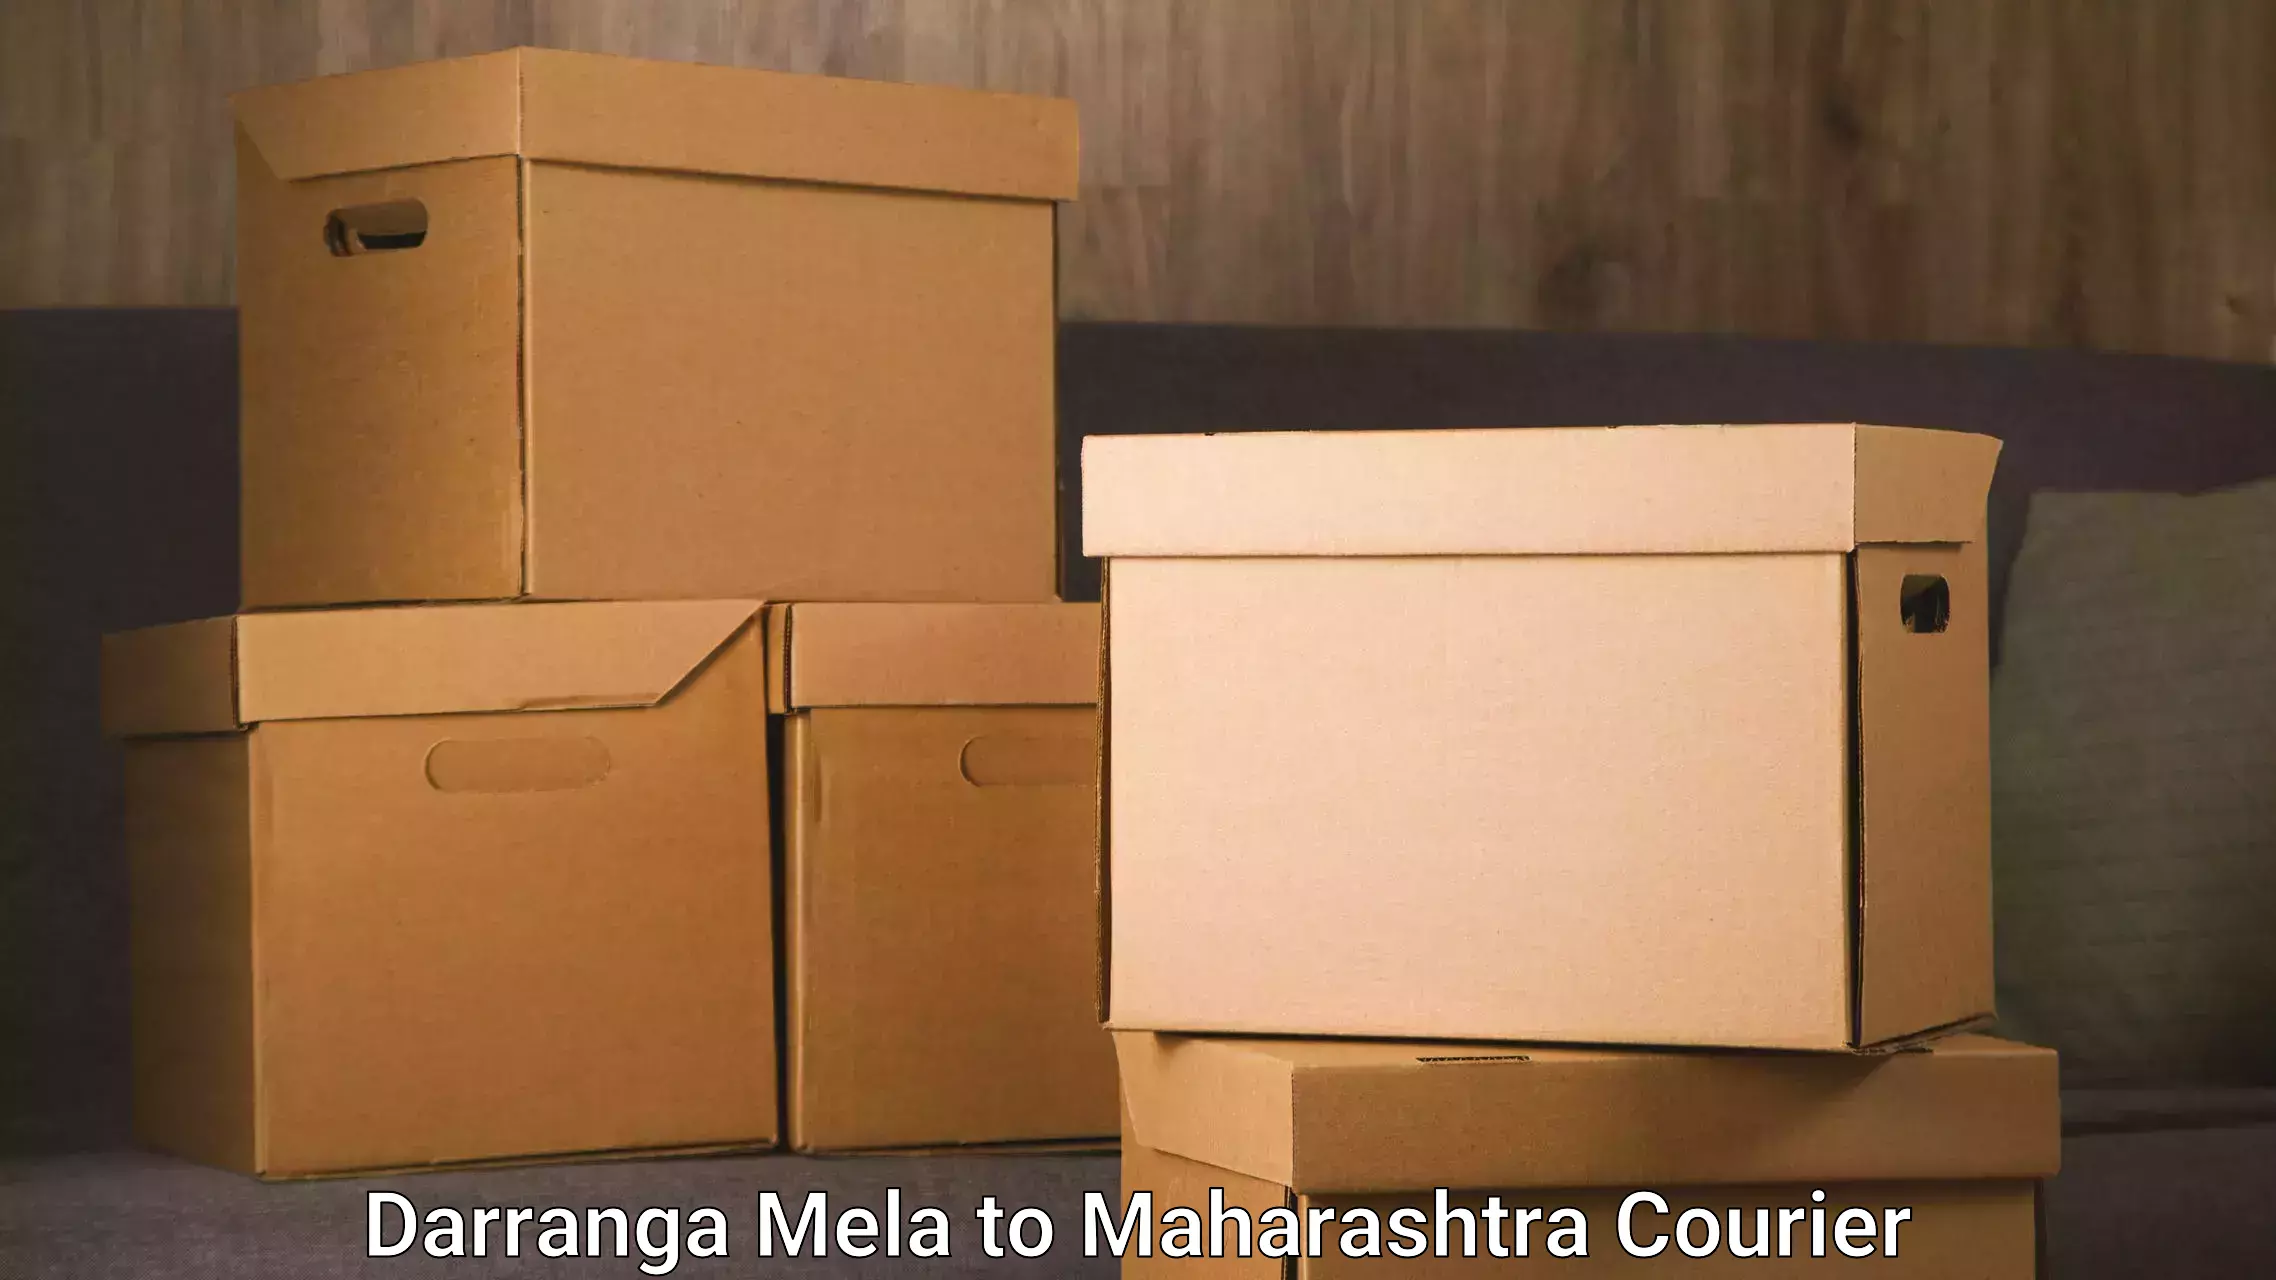 24-hour courier service Darranga Mela to Pulgaon